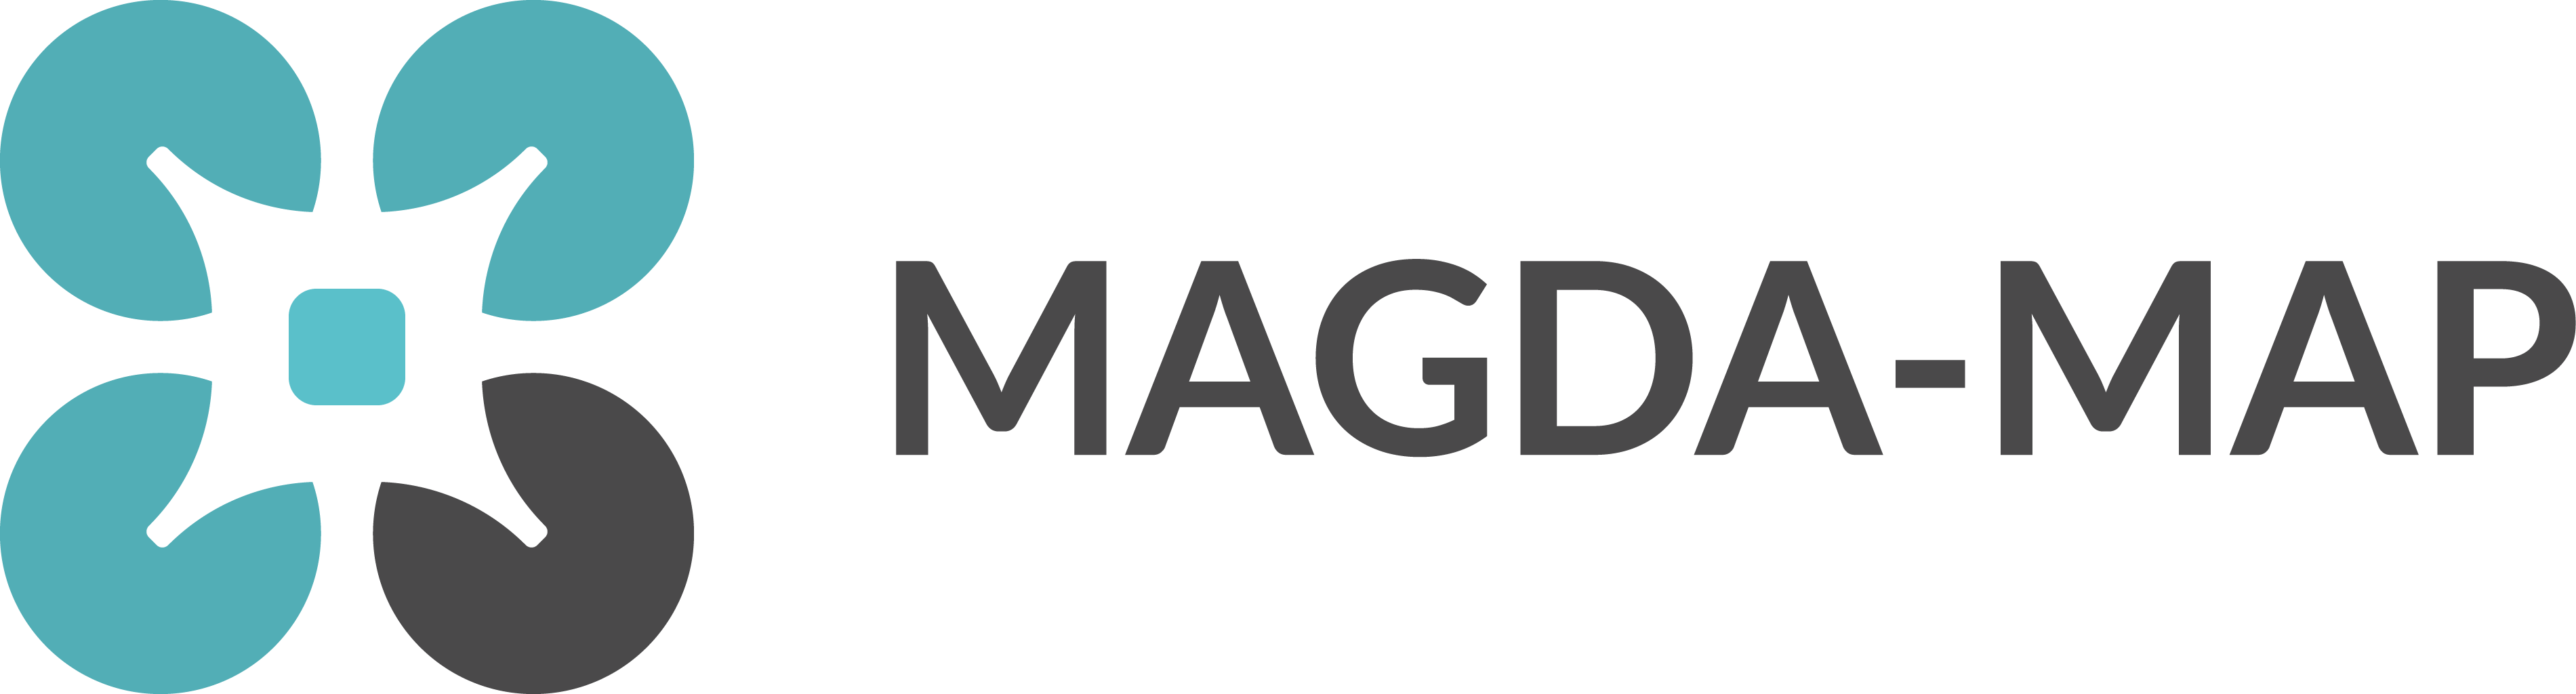 (c) Magda-map.de